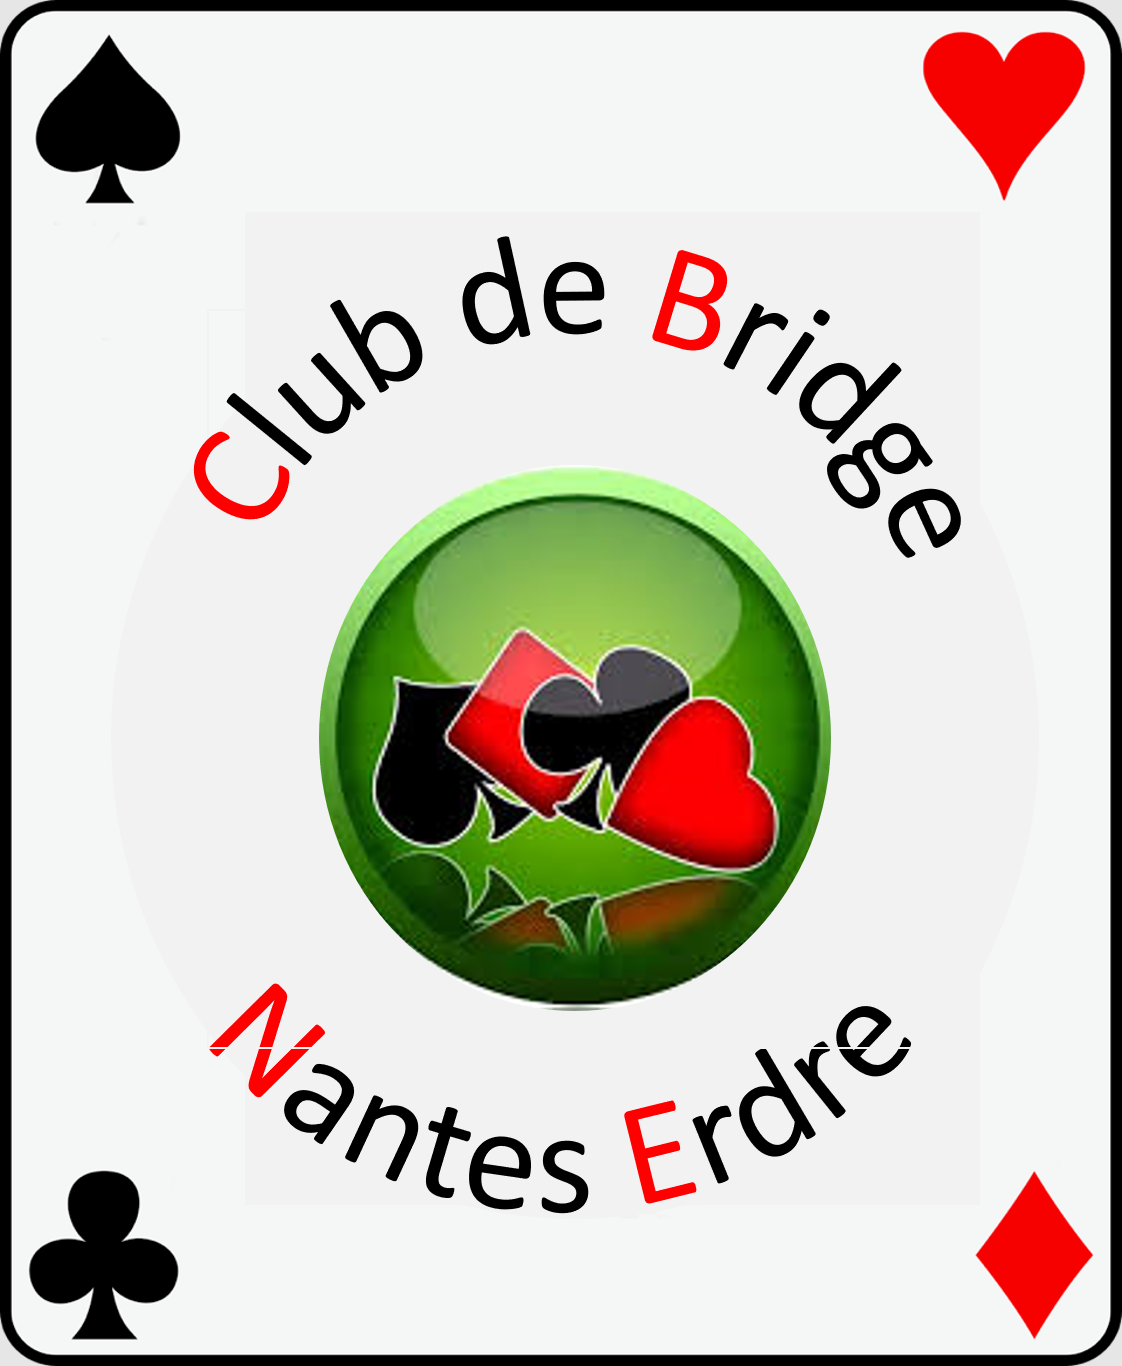 Club de Bridge Nantes Erdre